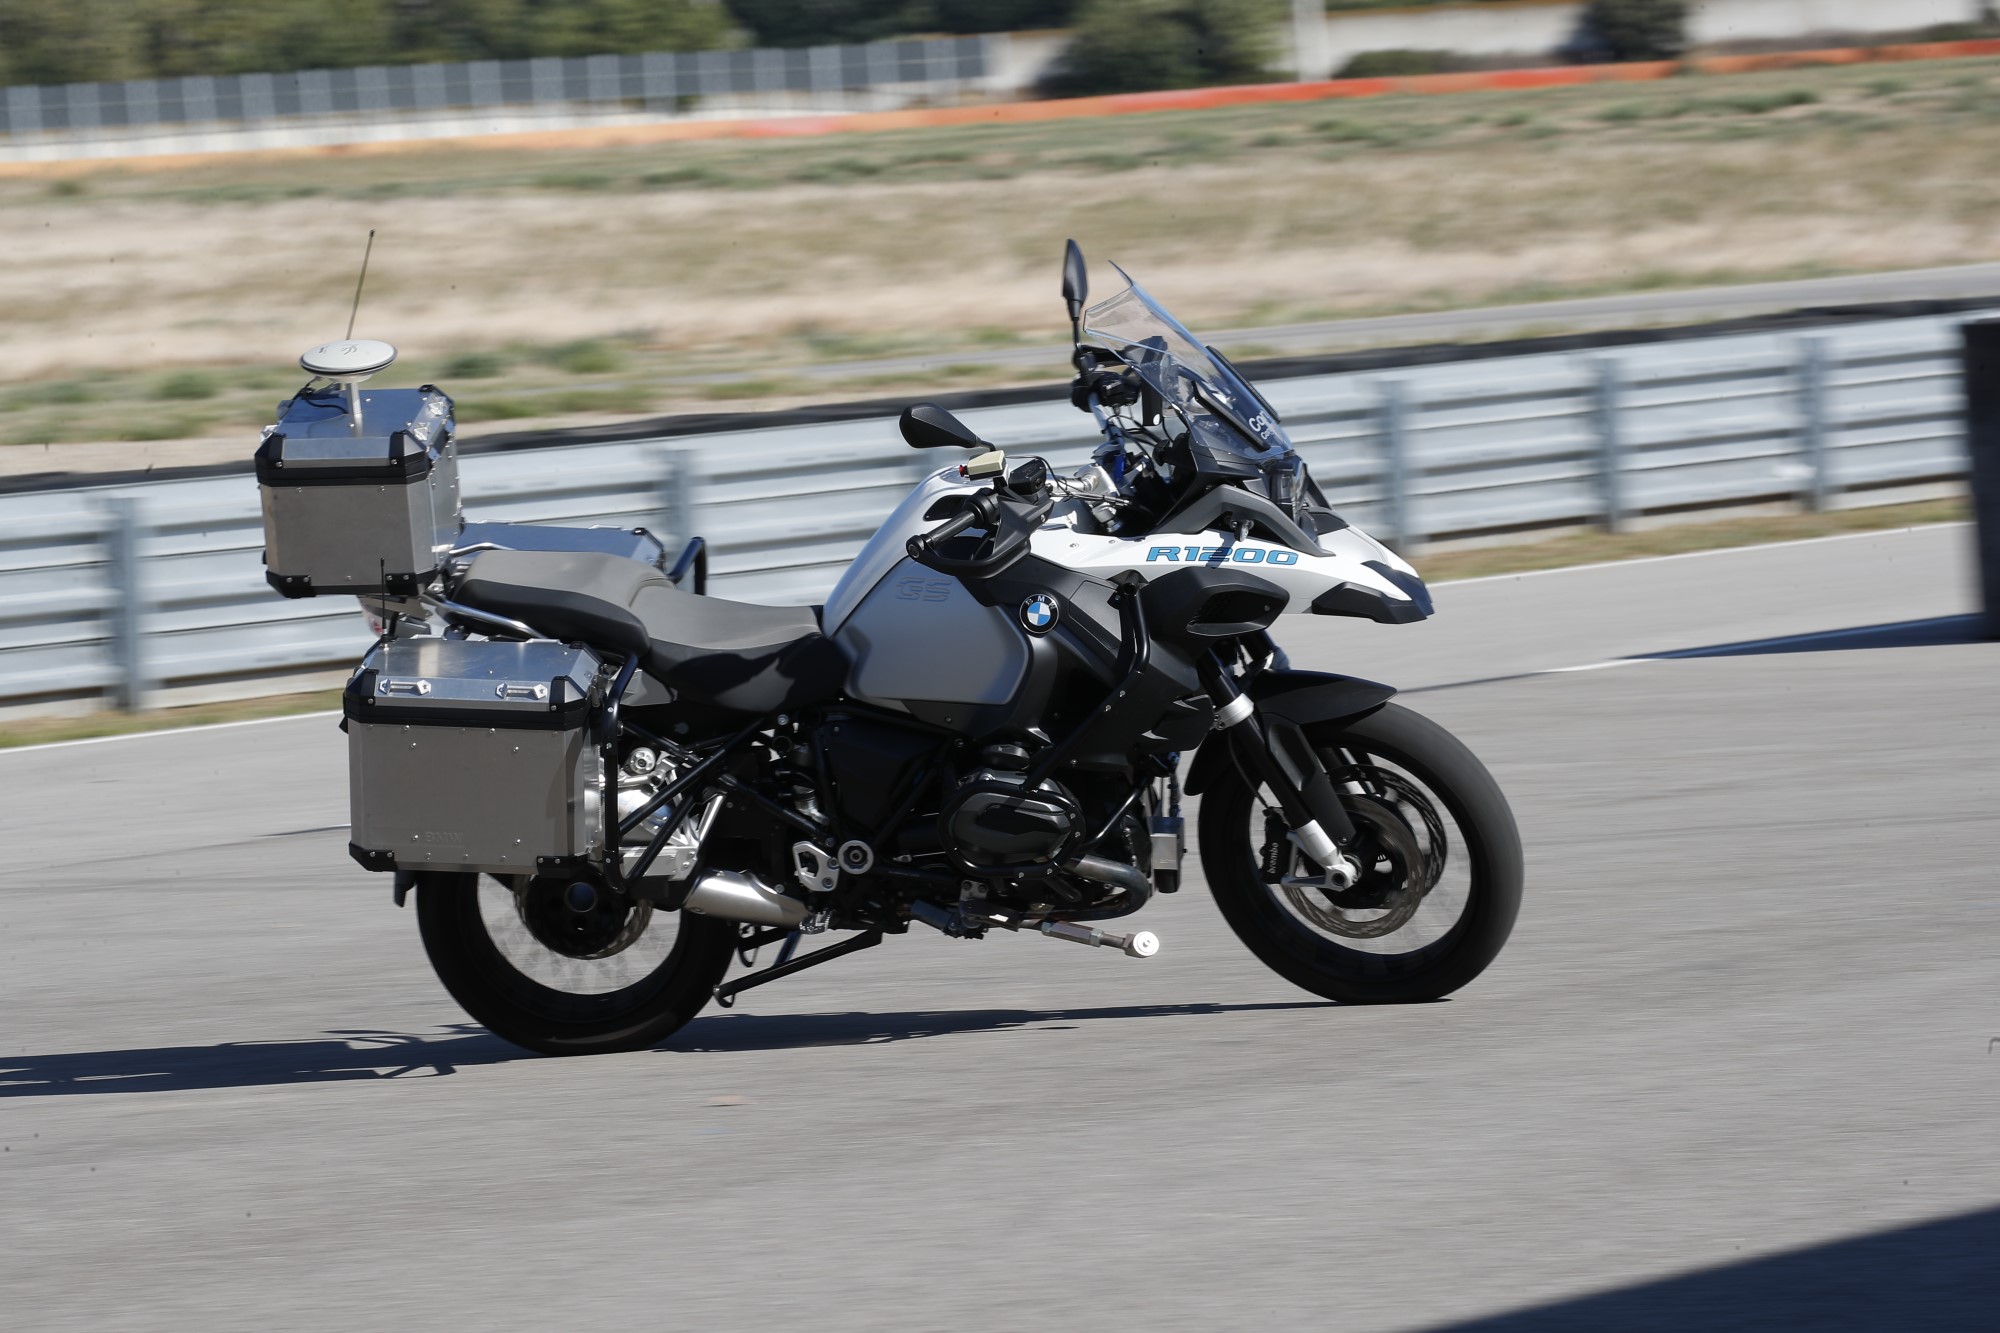 Tecnologia de condução autônoma em moto BMW